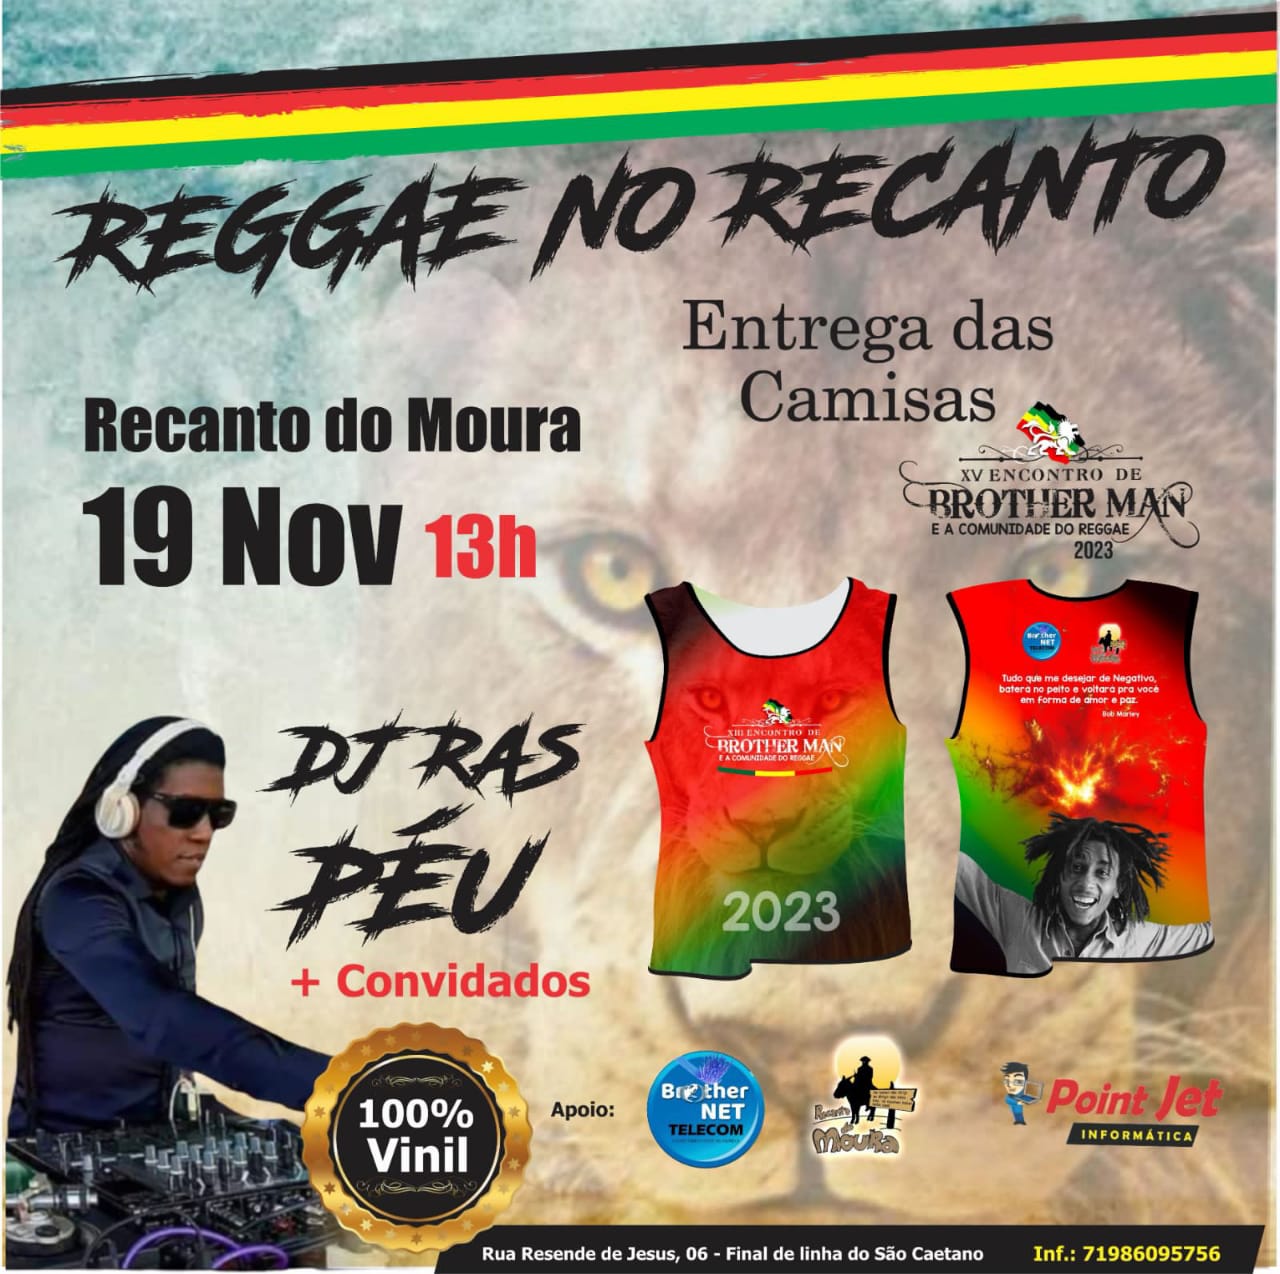 REGGAE NO RECANTO DJ RAS PEU & COVIDADOS